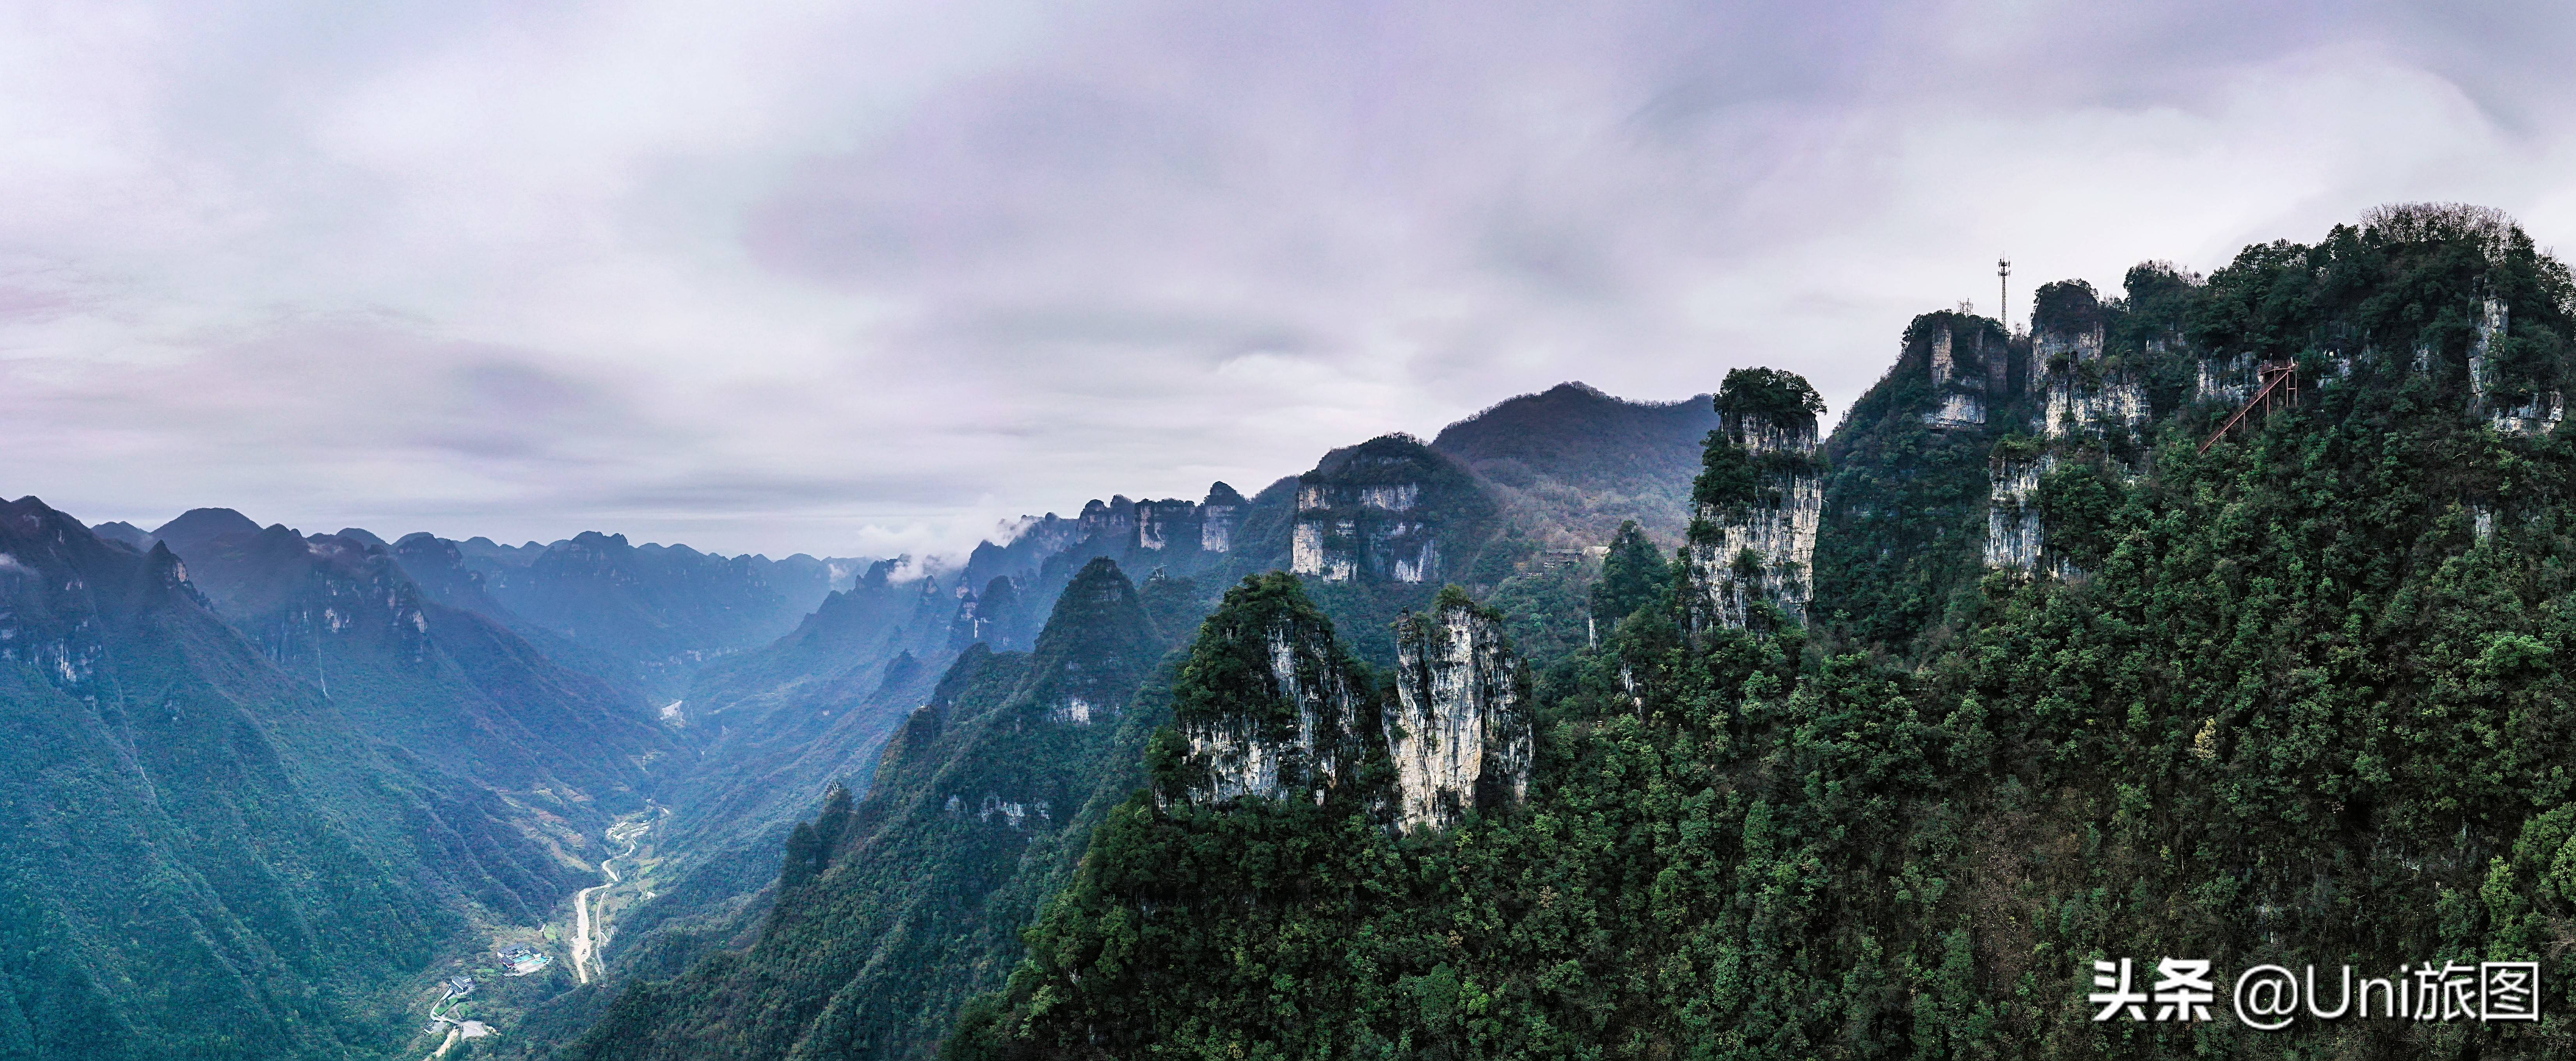 香港中国旅游社群摄影师张厚渊：用相机去记录自然风光之美